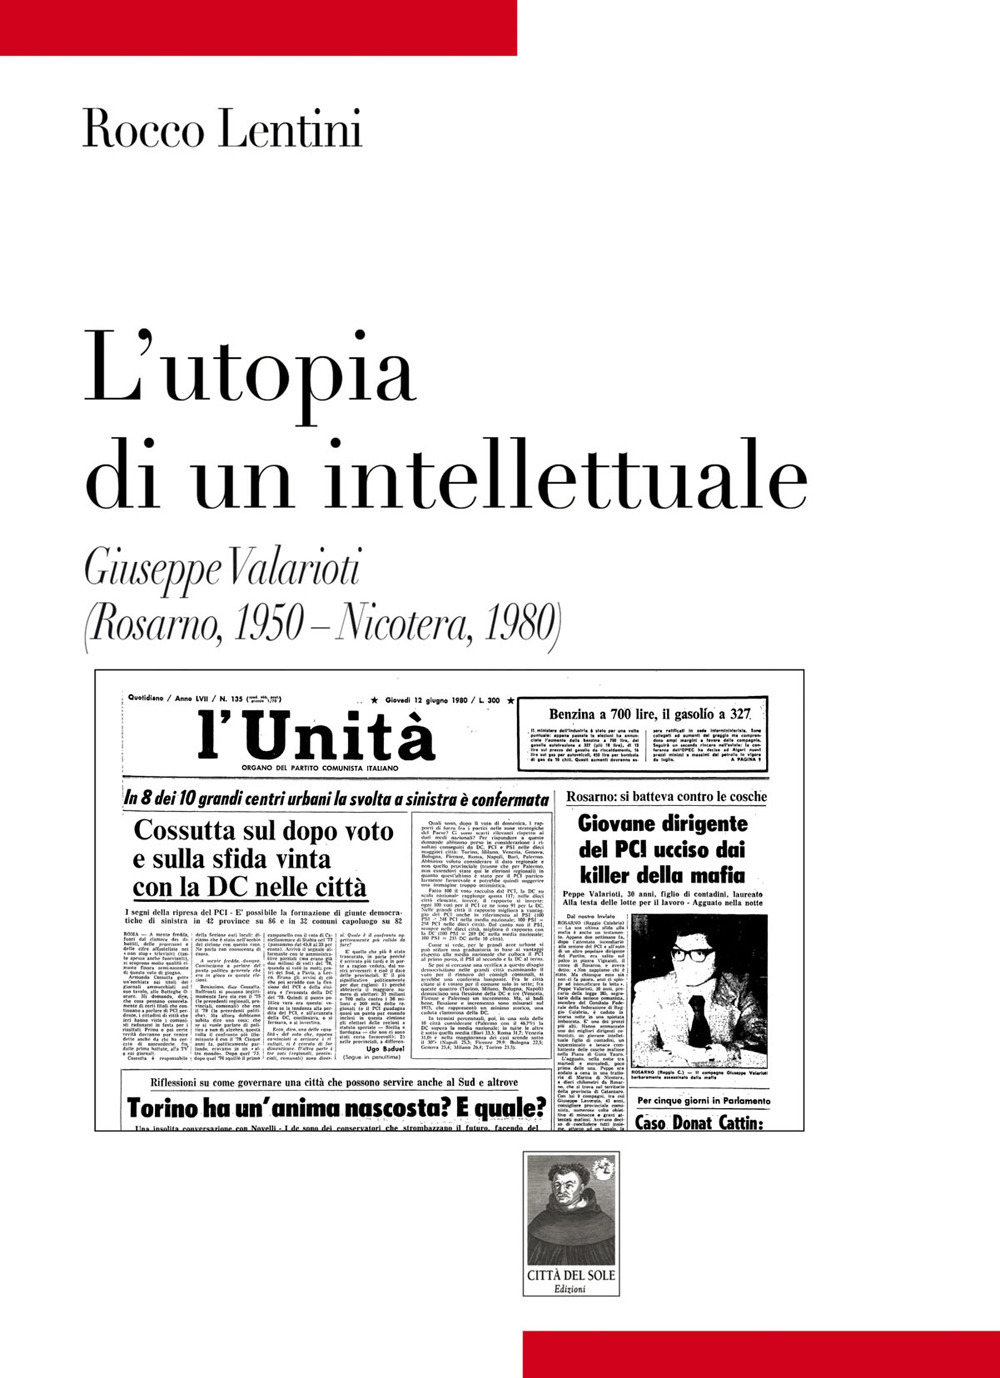 L'utopia di un intellettuale. Giuseppe Valarioti (Rosarno, 1950-Nicotera, 1980)